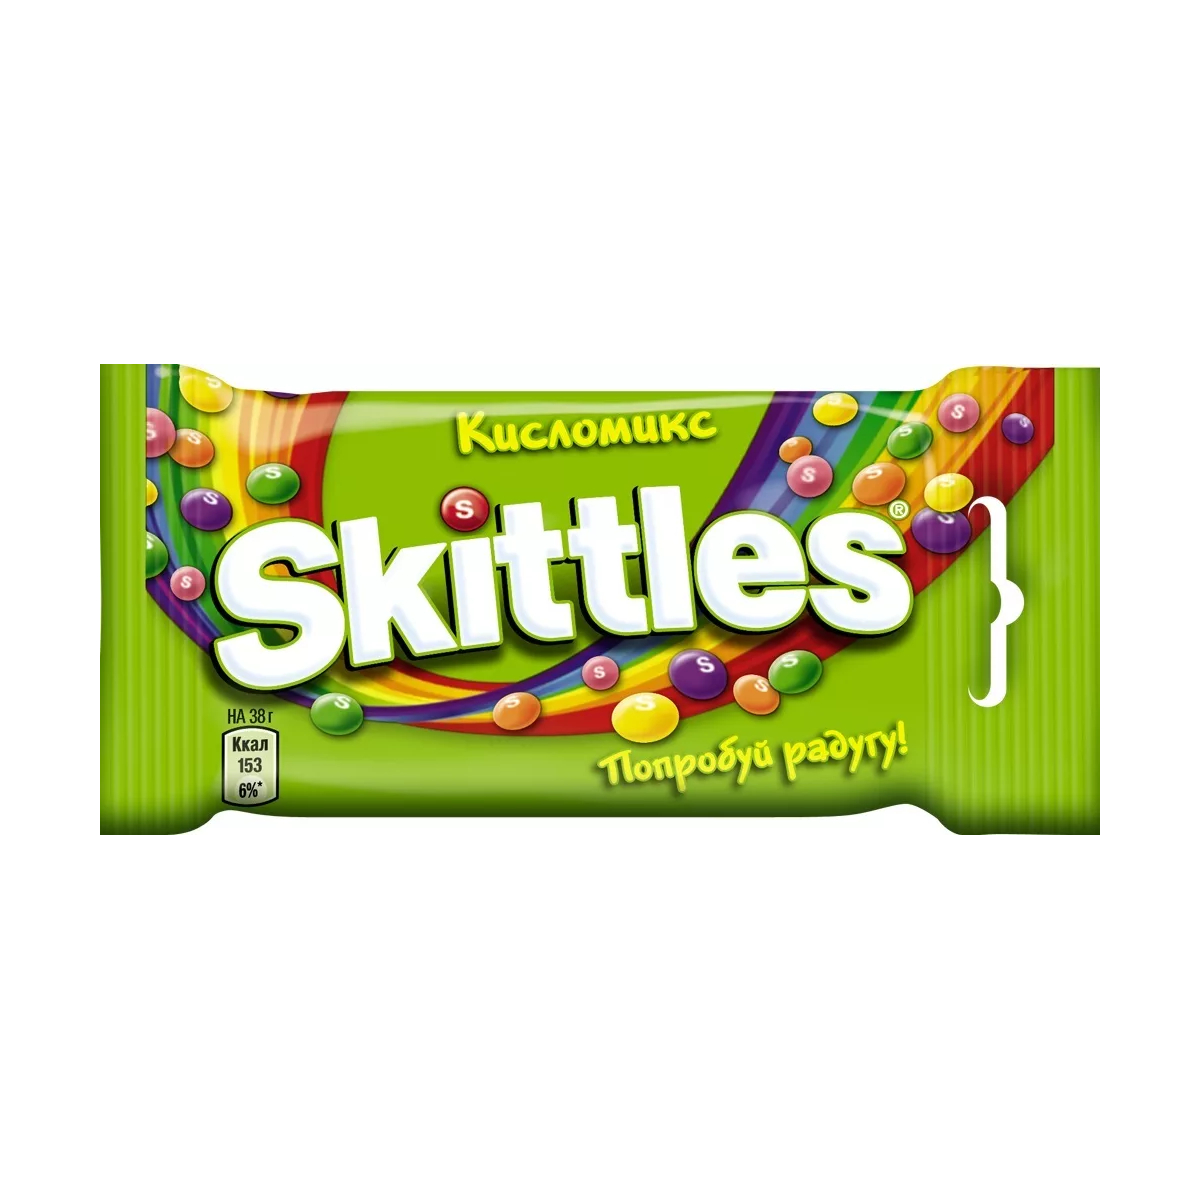 Драже Skittles Кисломикс, в разноцветной глазури, 38 г драже skittles фрукты 38 г